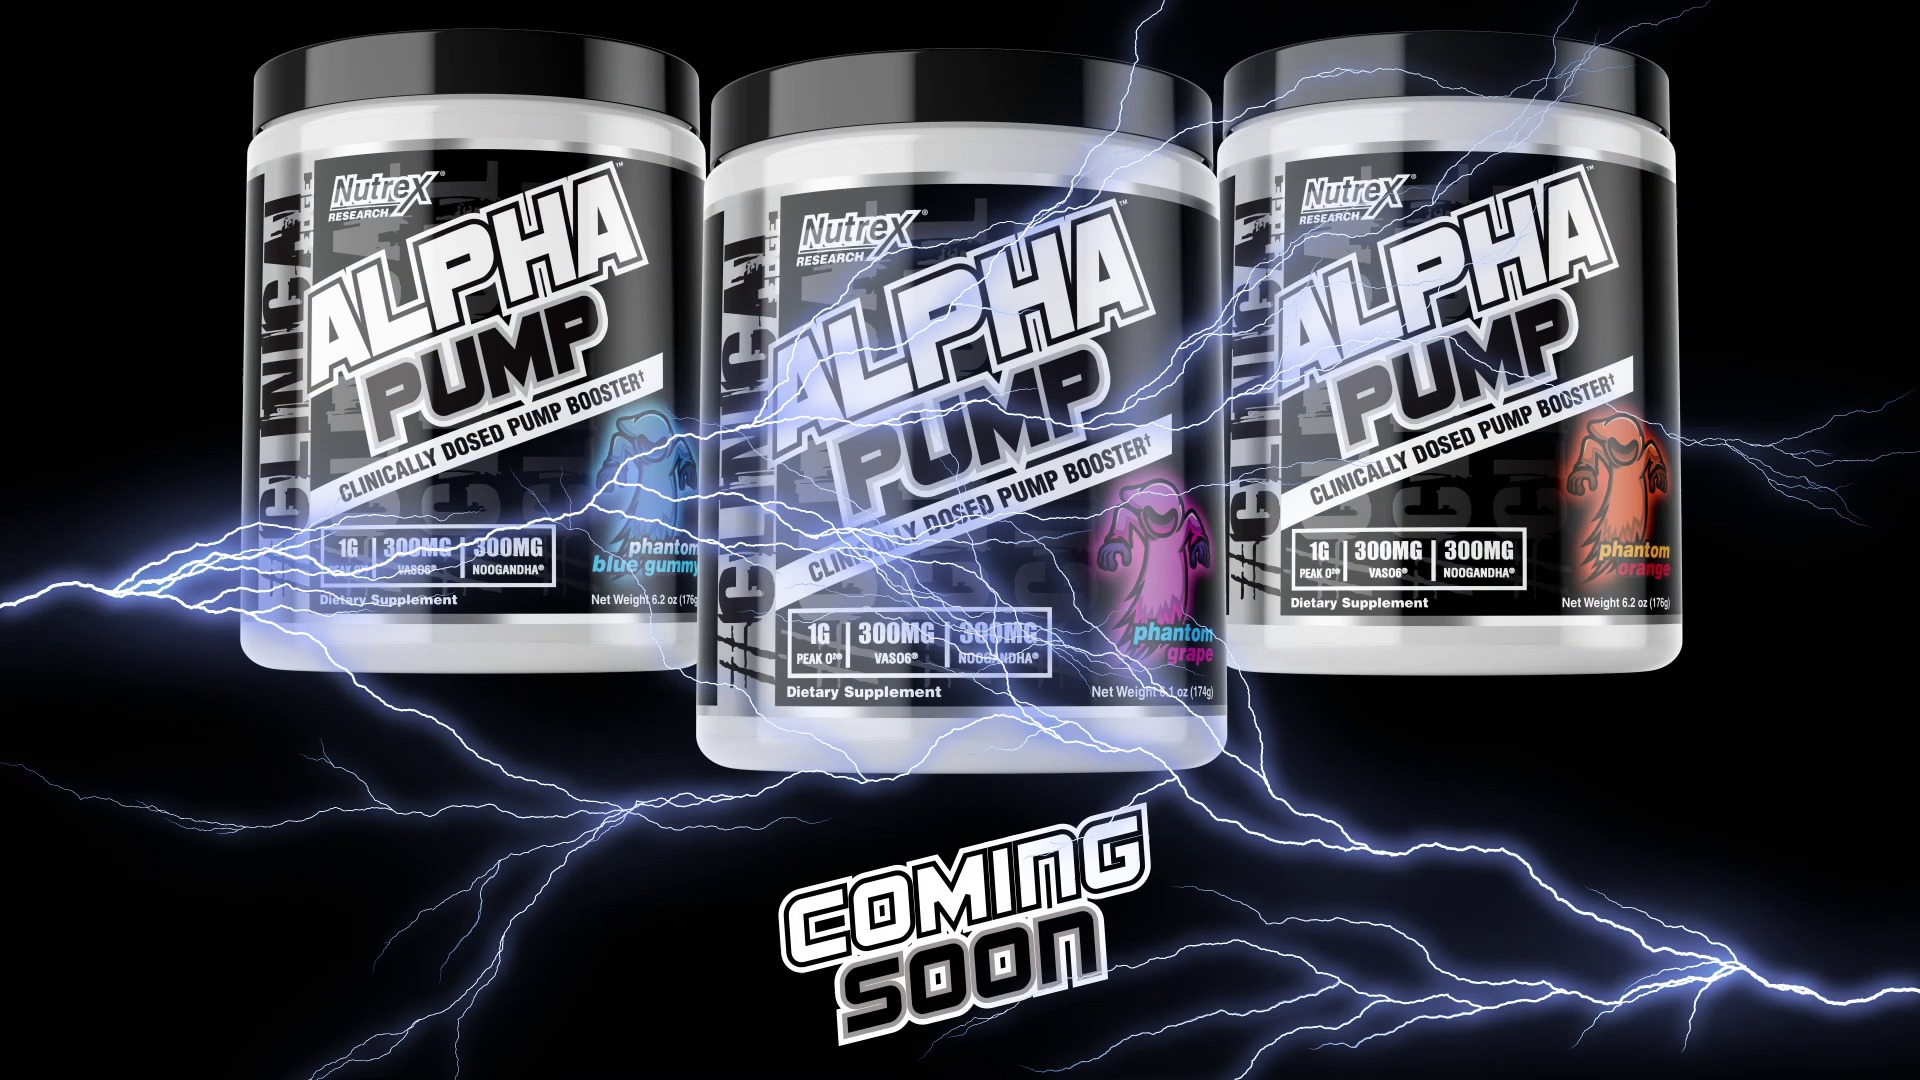 nutrex-alpha-pump-coming-soon.jpg